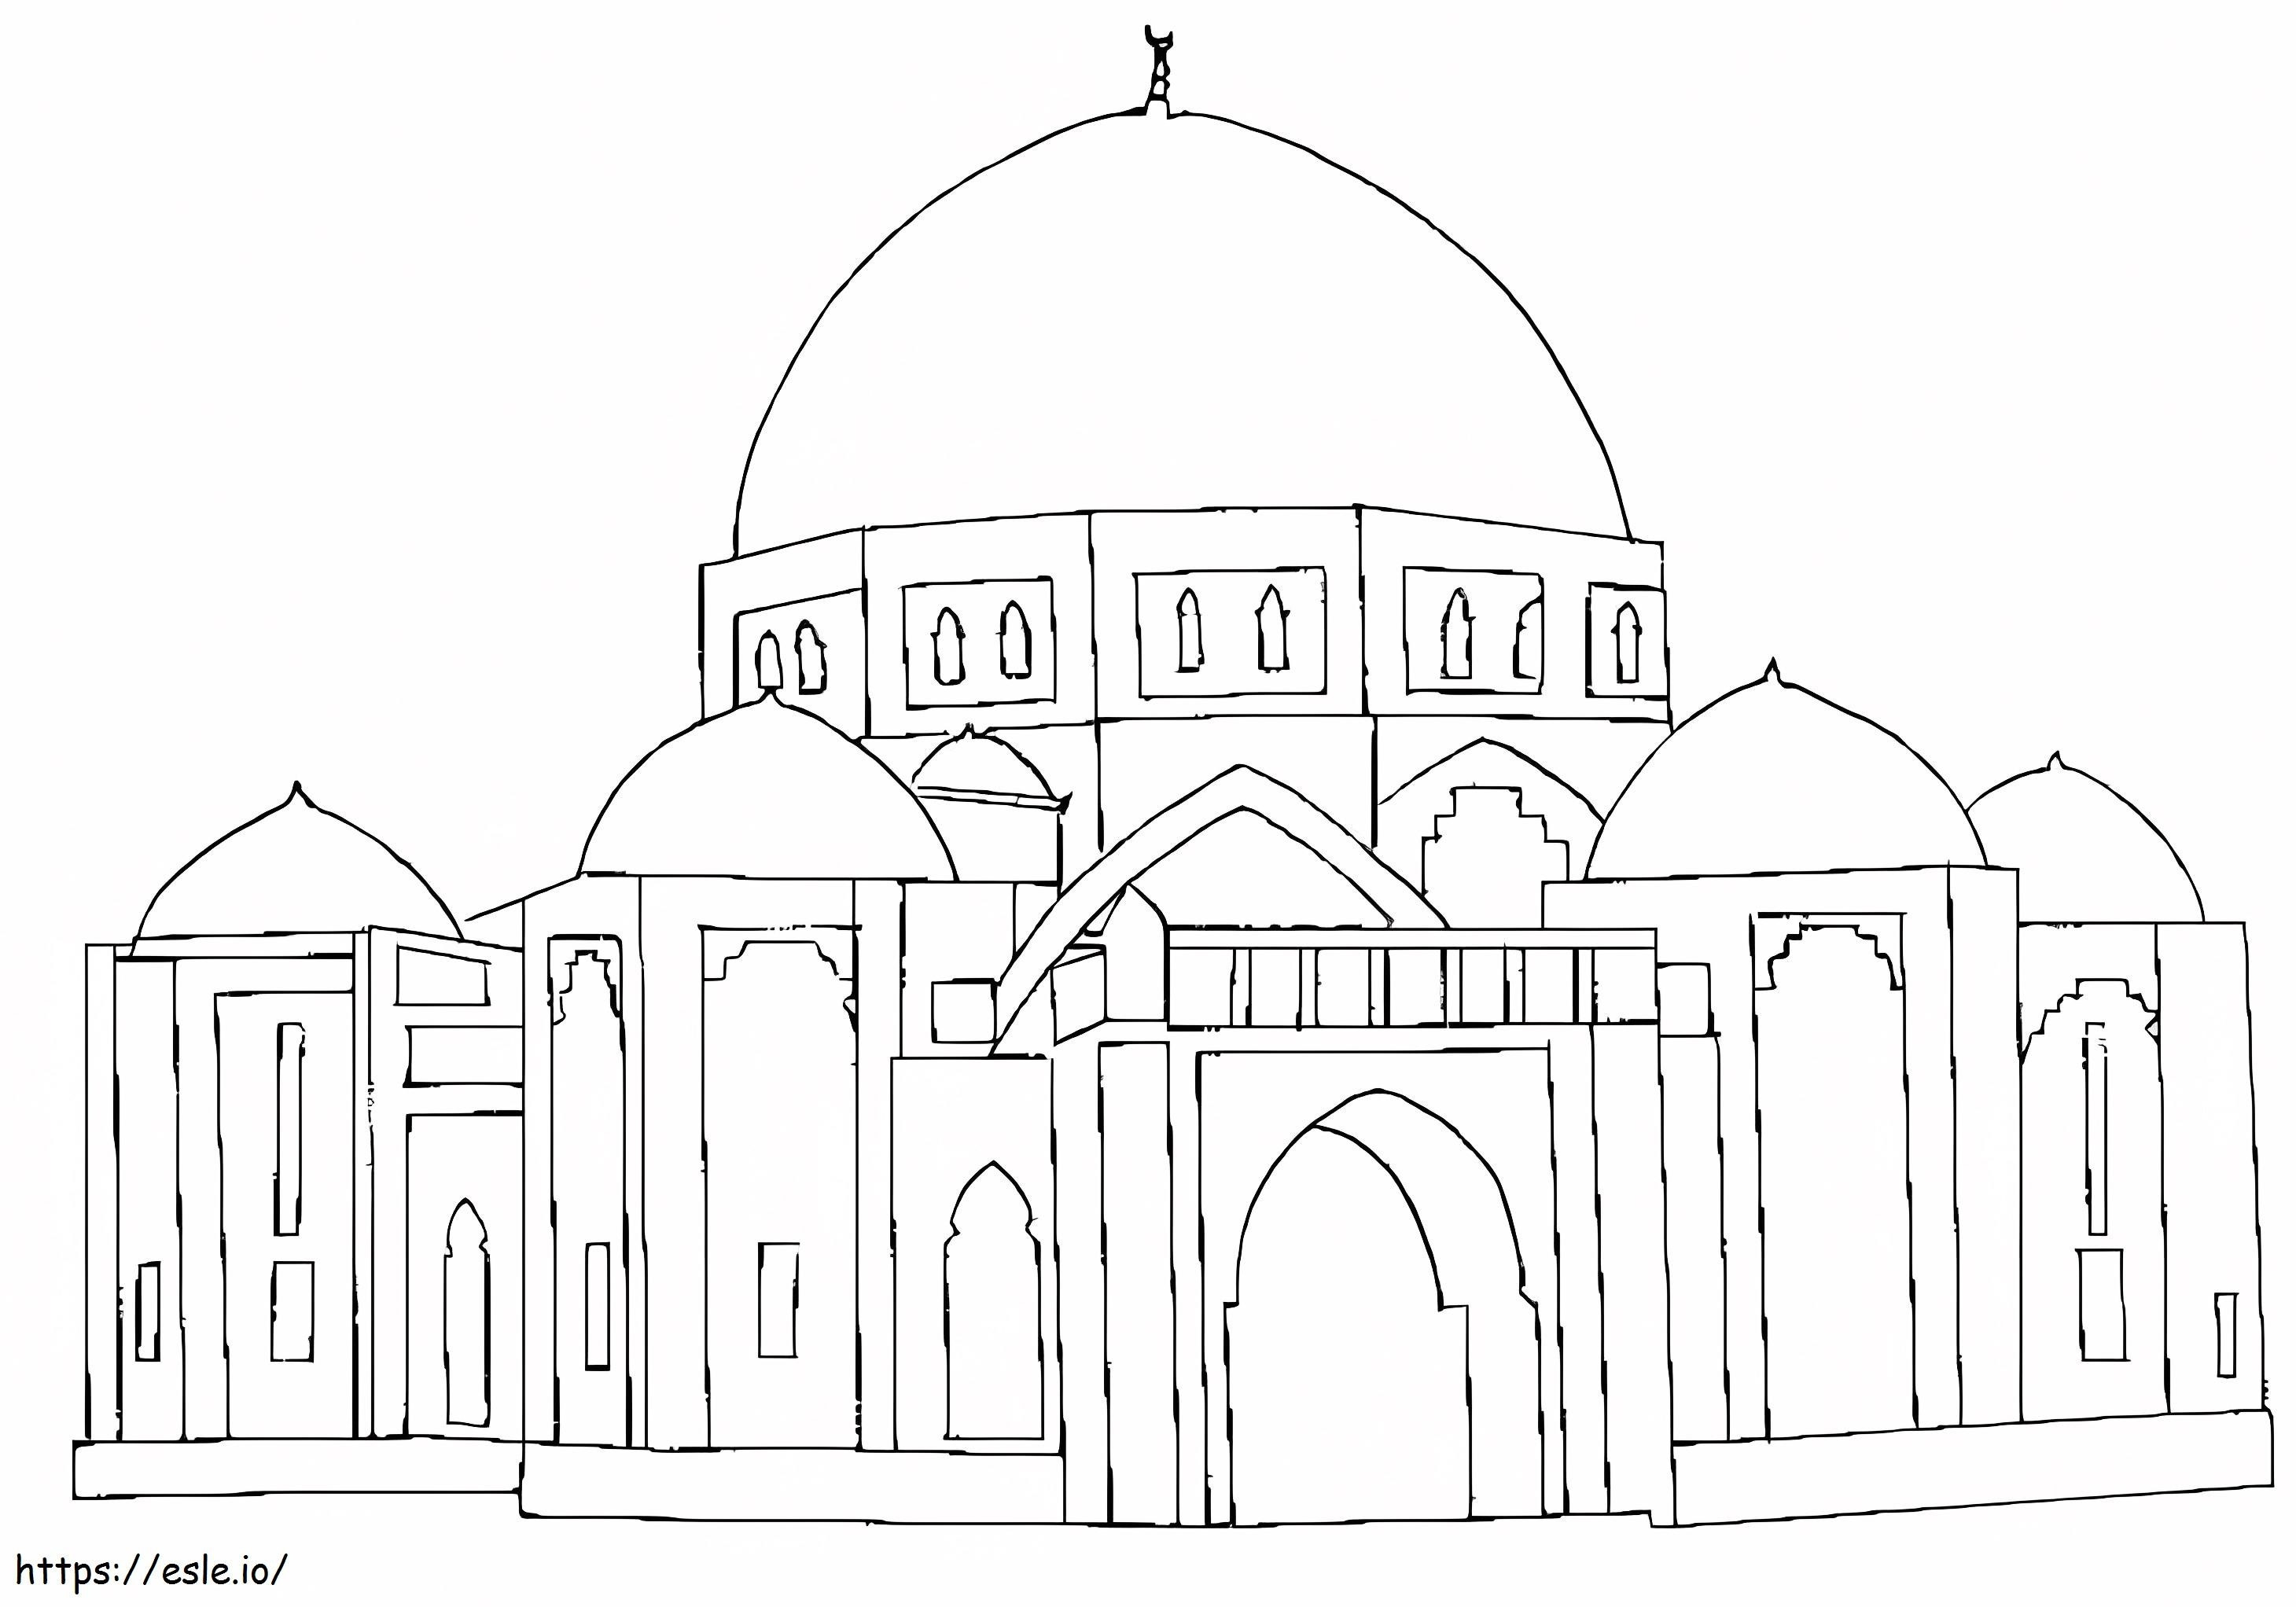 Moschee zum Ausdrucken ausmalbilder